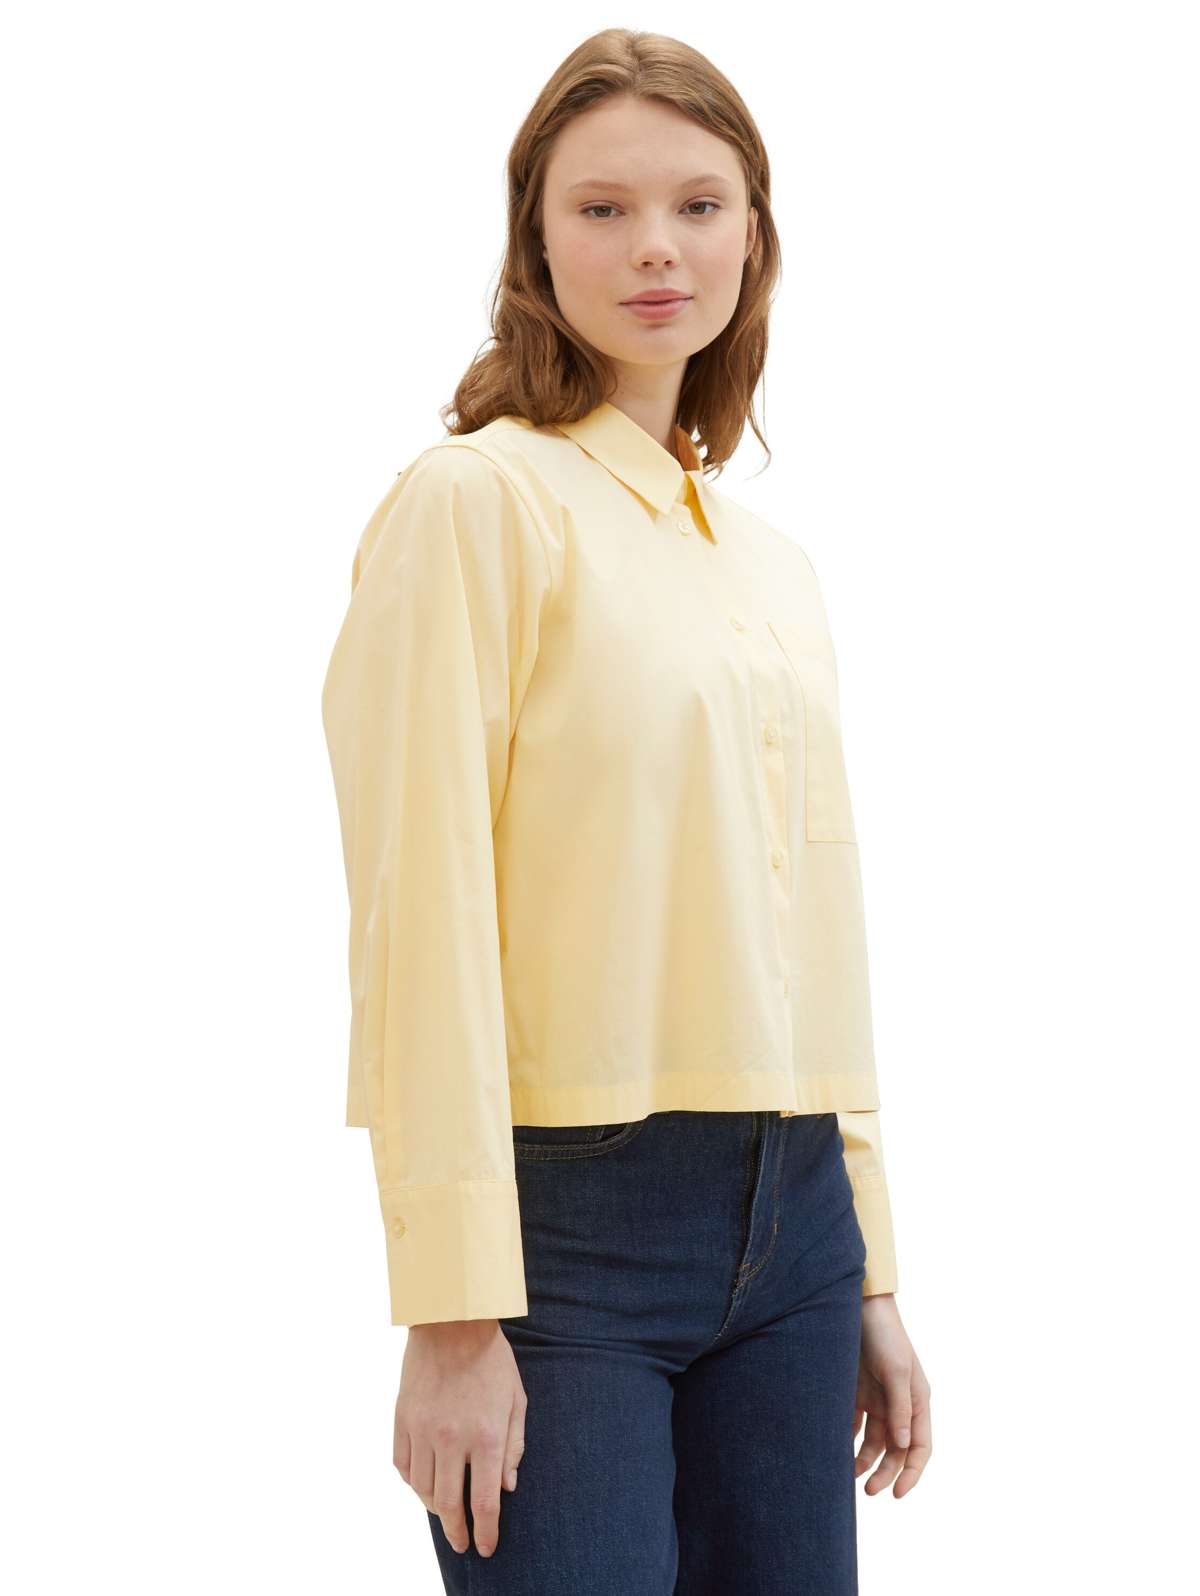 Блузка-рубашка со складками в стиле оверсайз и очень короткая модель.